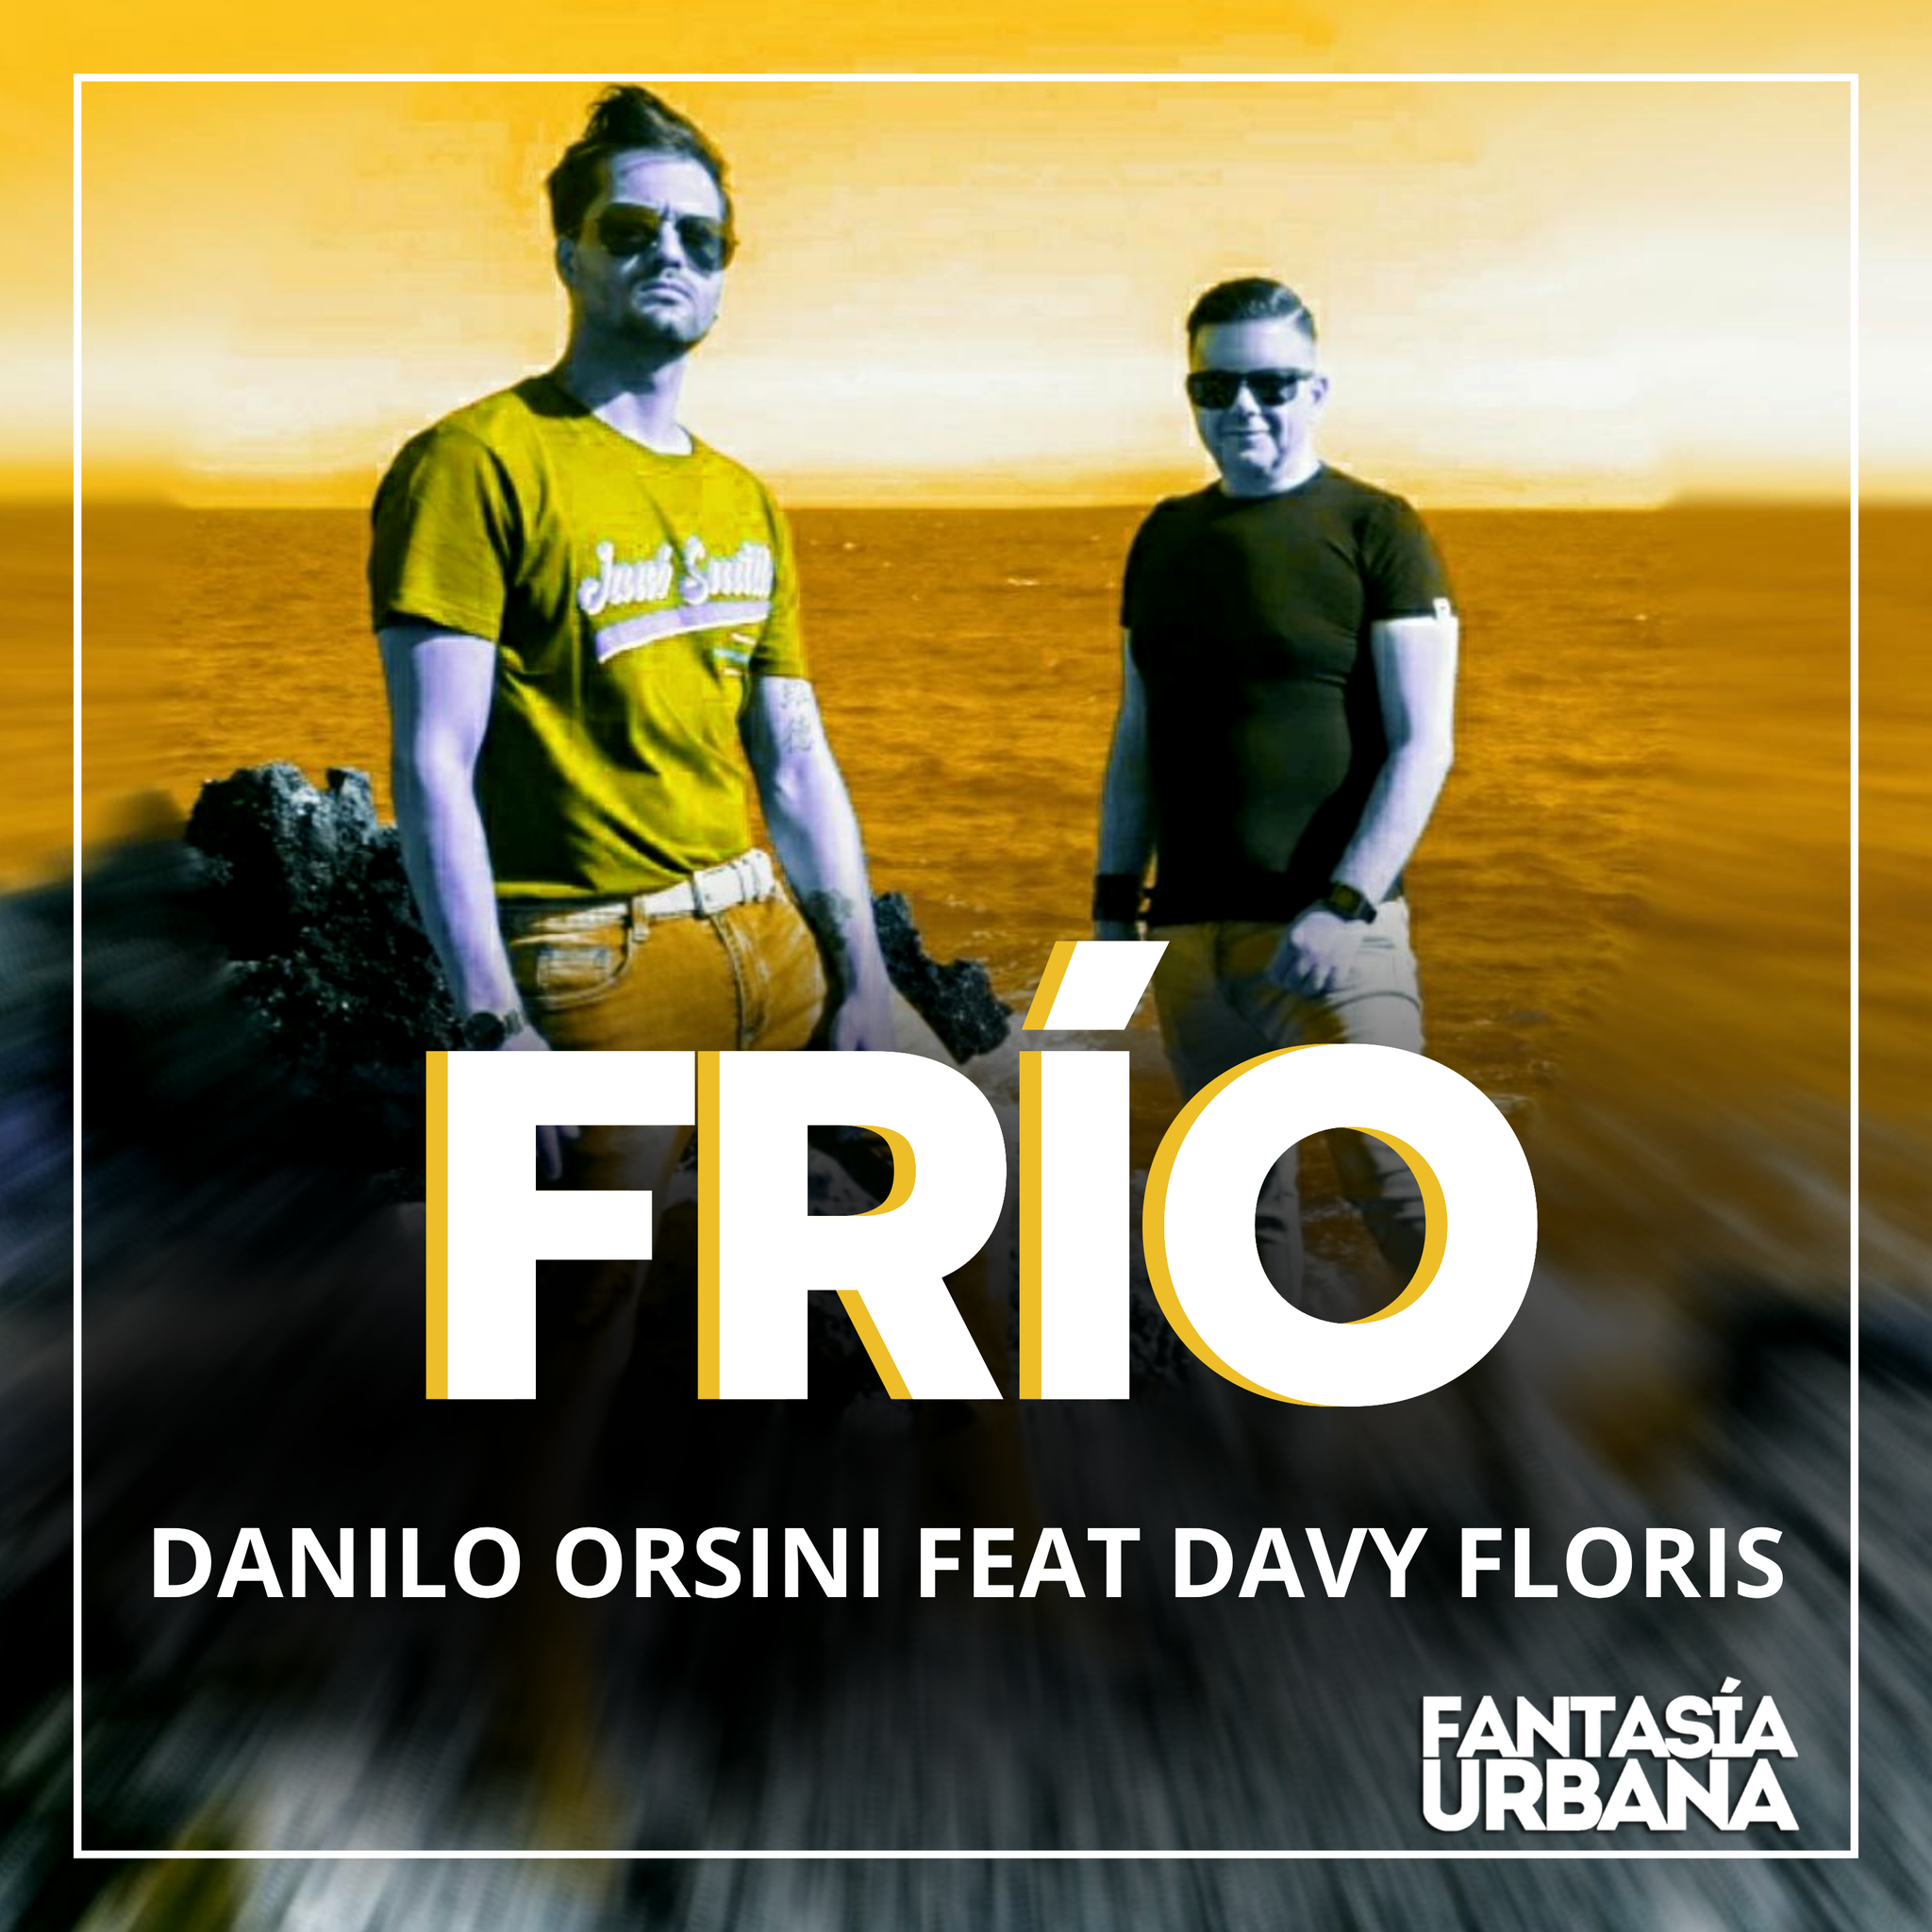 Danilo Orsini Feat. Davy Floris – Frío